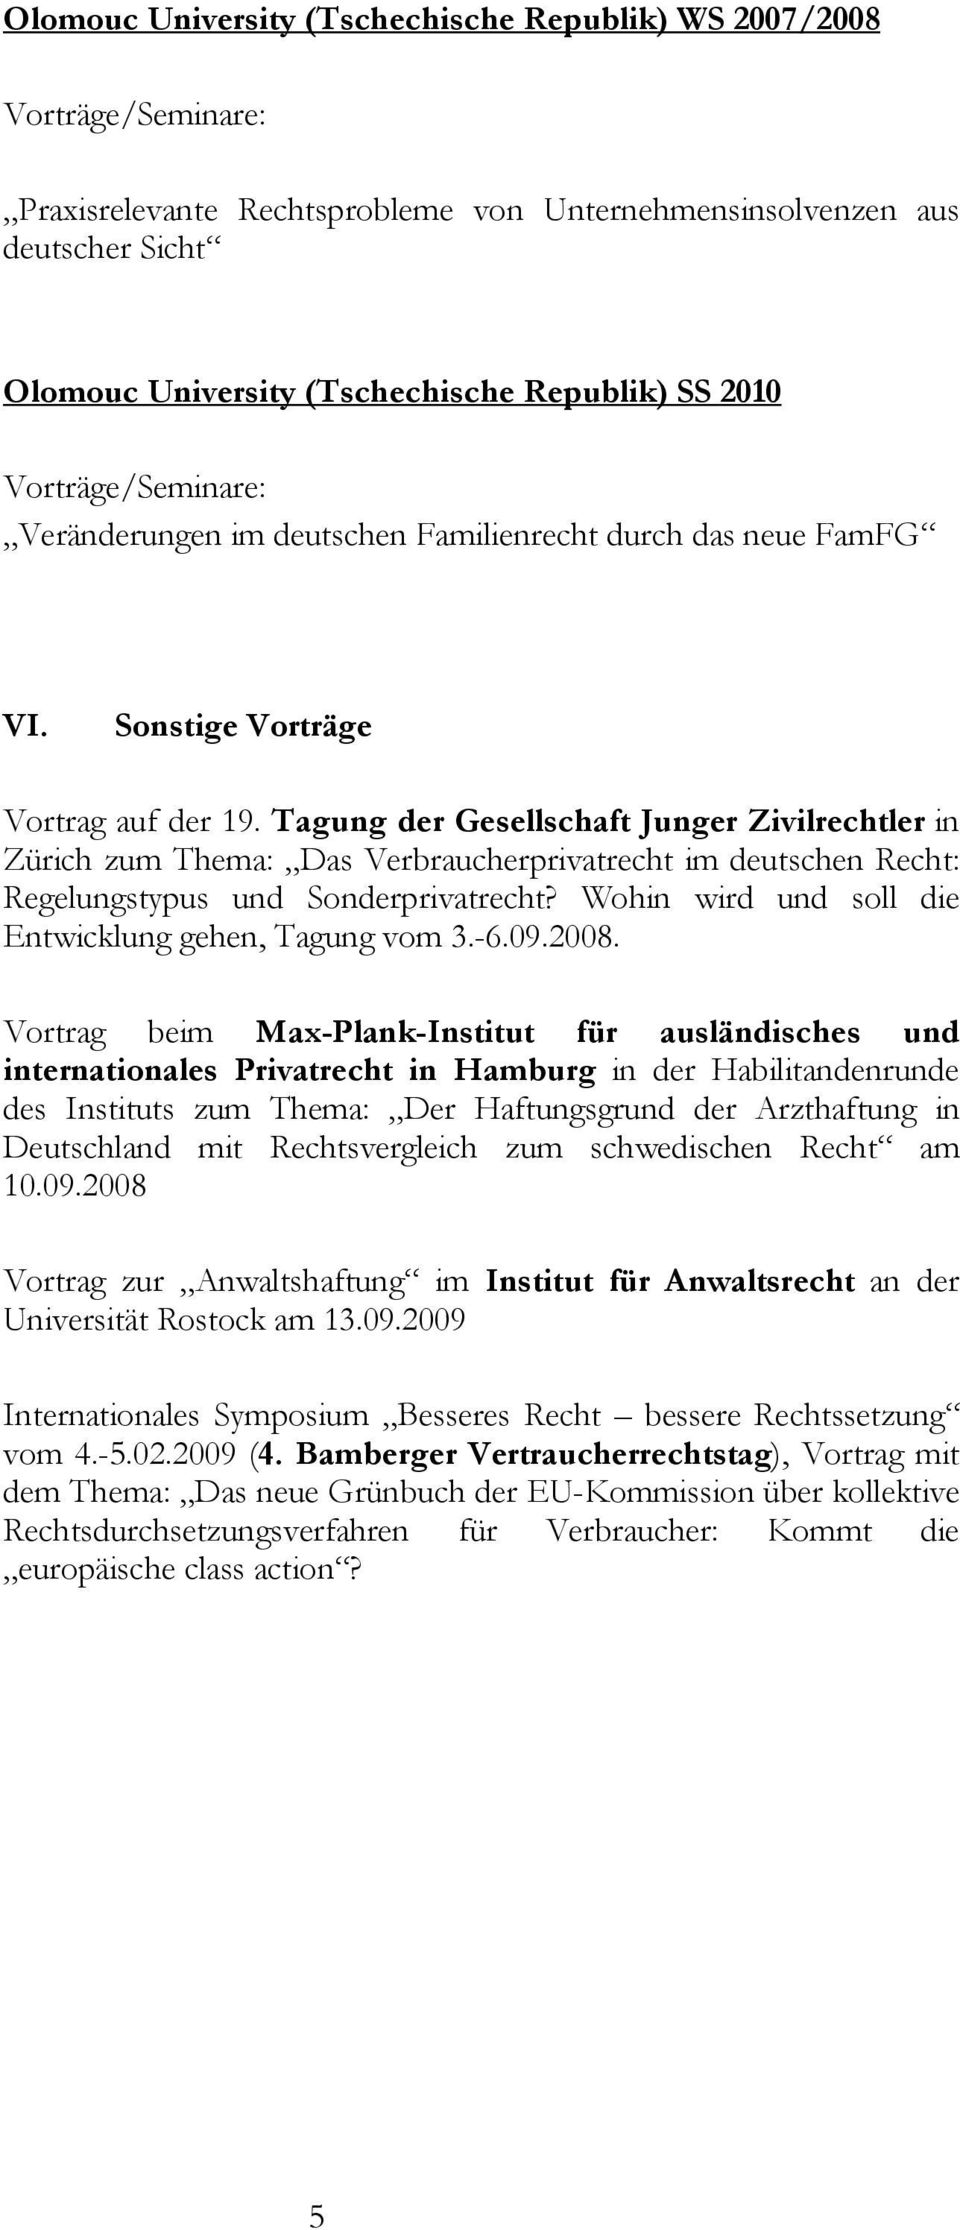 Tagung der Gesellschaft Junger Zivilrechtler in Zürich zum Thema: Das Verbraucherprivatrecht im deutschen Recht: Regelungstypus und Sonderprivatrecht?